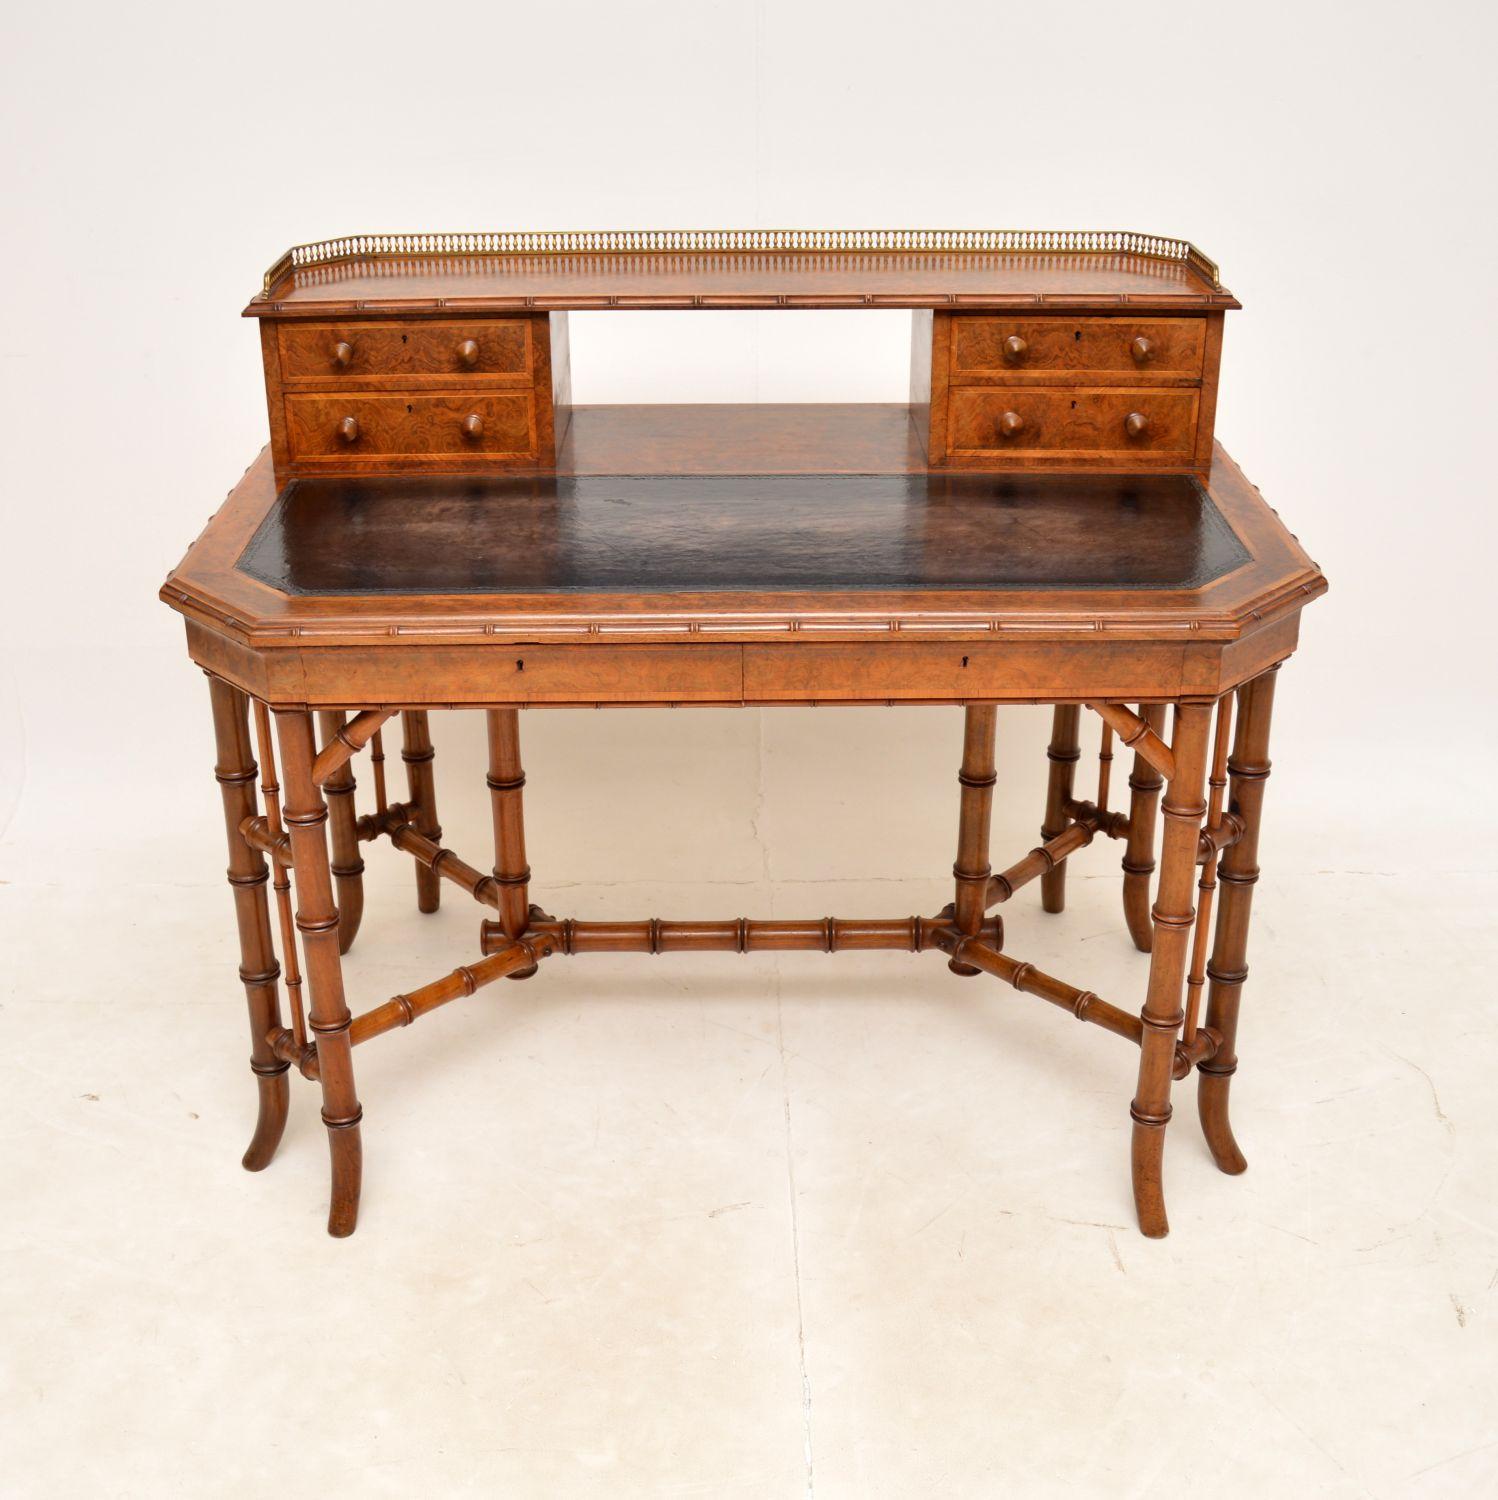 Ein prächtiger und sehr seltener antiker Schreibtisch von höchster Qualität. Sie wurde in England von Howard and Sons hergestellt und stammt aus der Zeit zwischen 1860 und 1880.

Dies war wahrscheinlich eine einmalige Auftragsarbeit, sie ist sehr